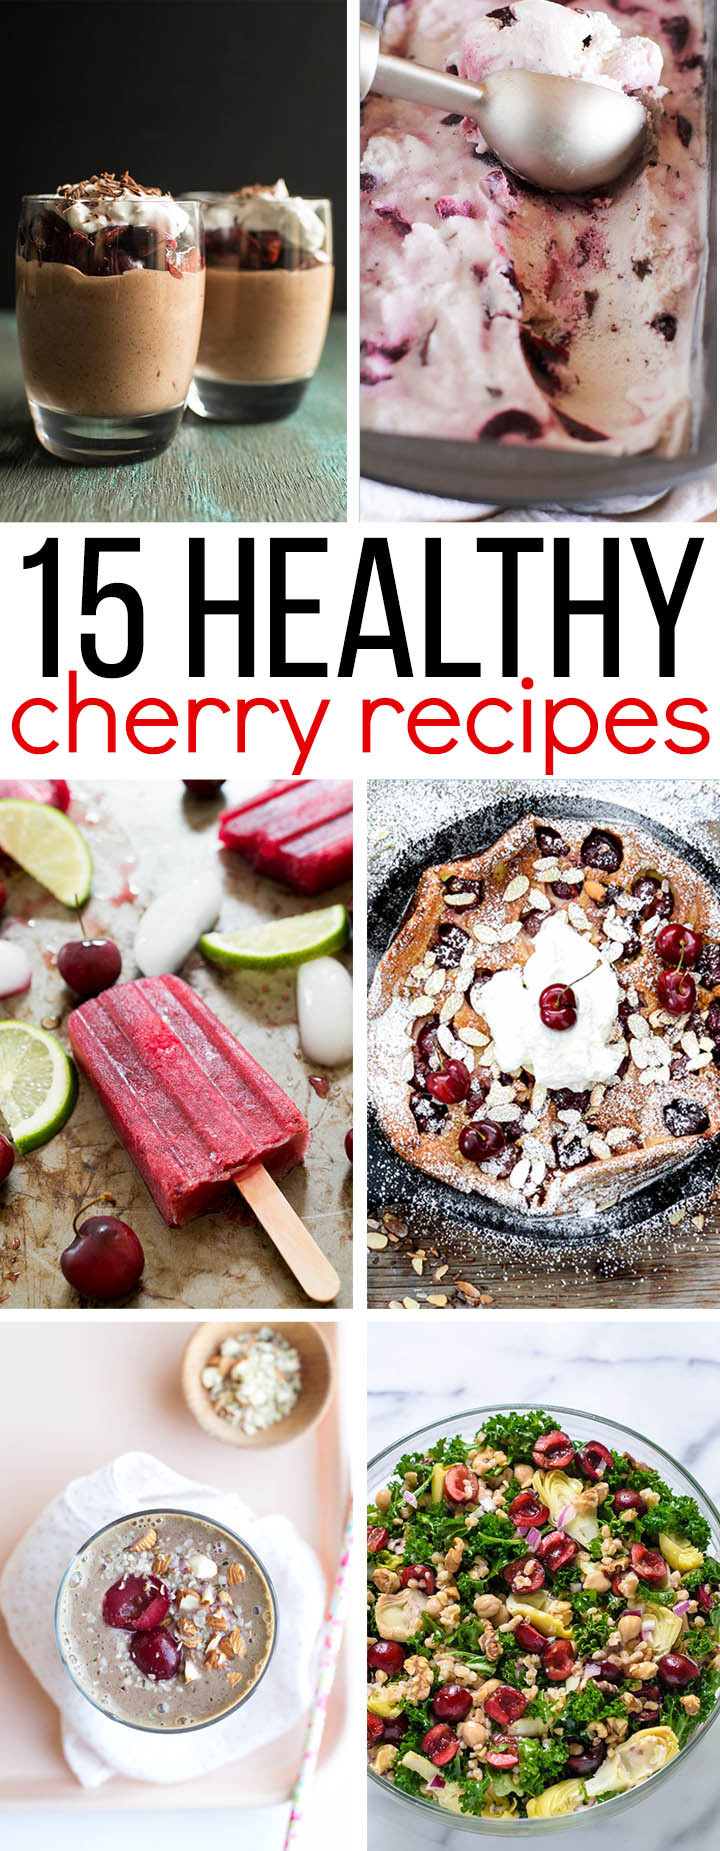 Healthy Cherry Recipes
 15 Healthy Cherry Recipes for Summer